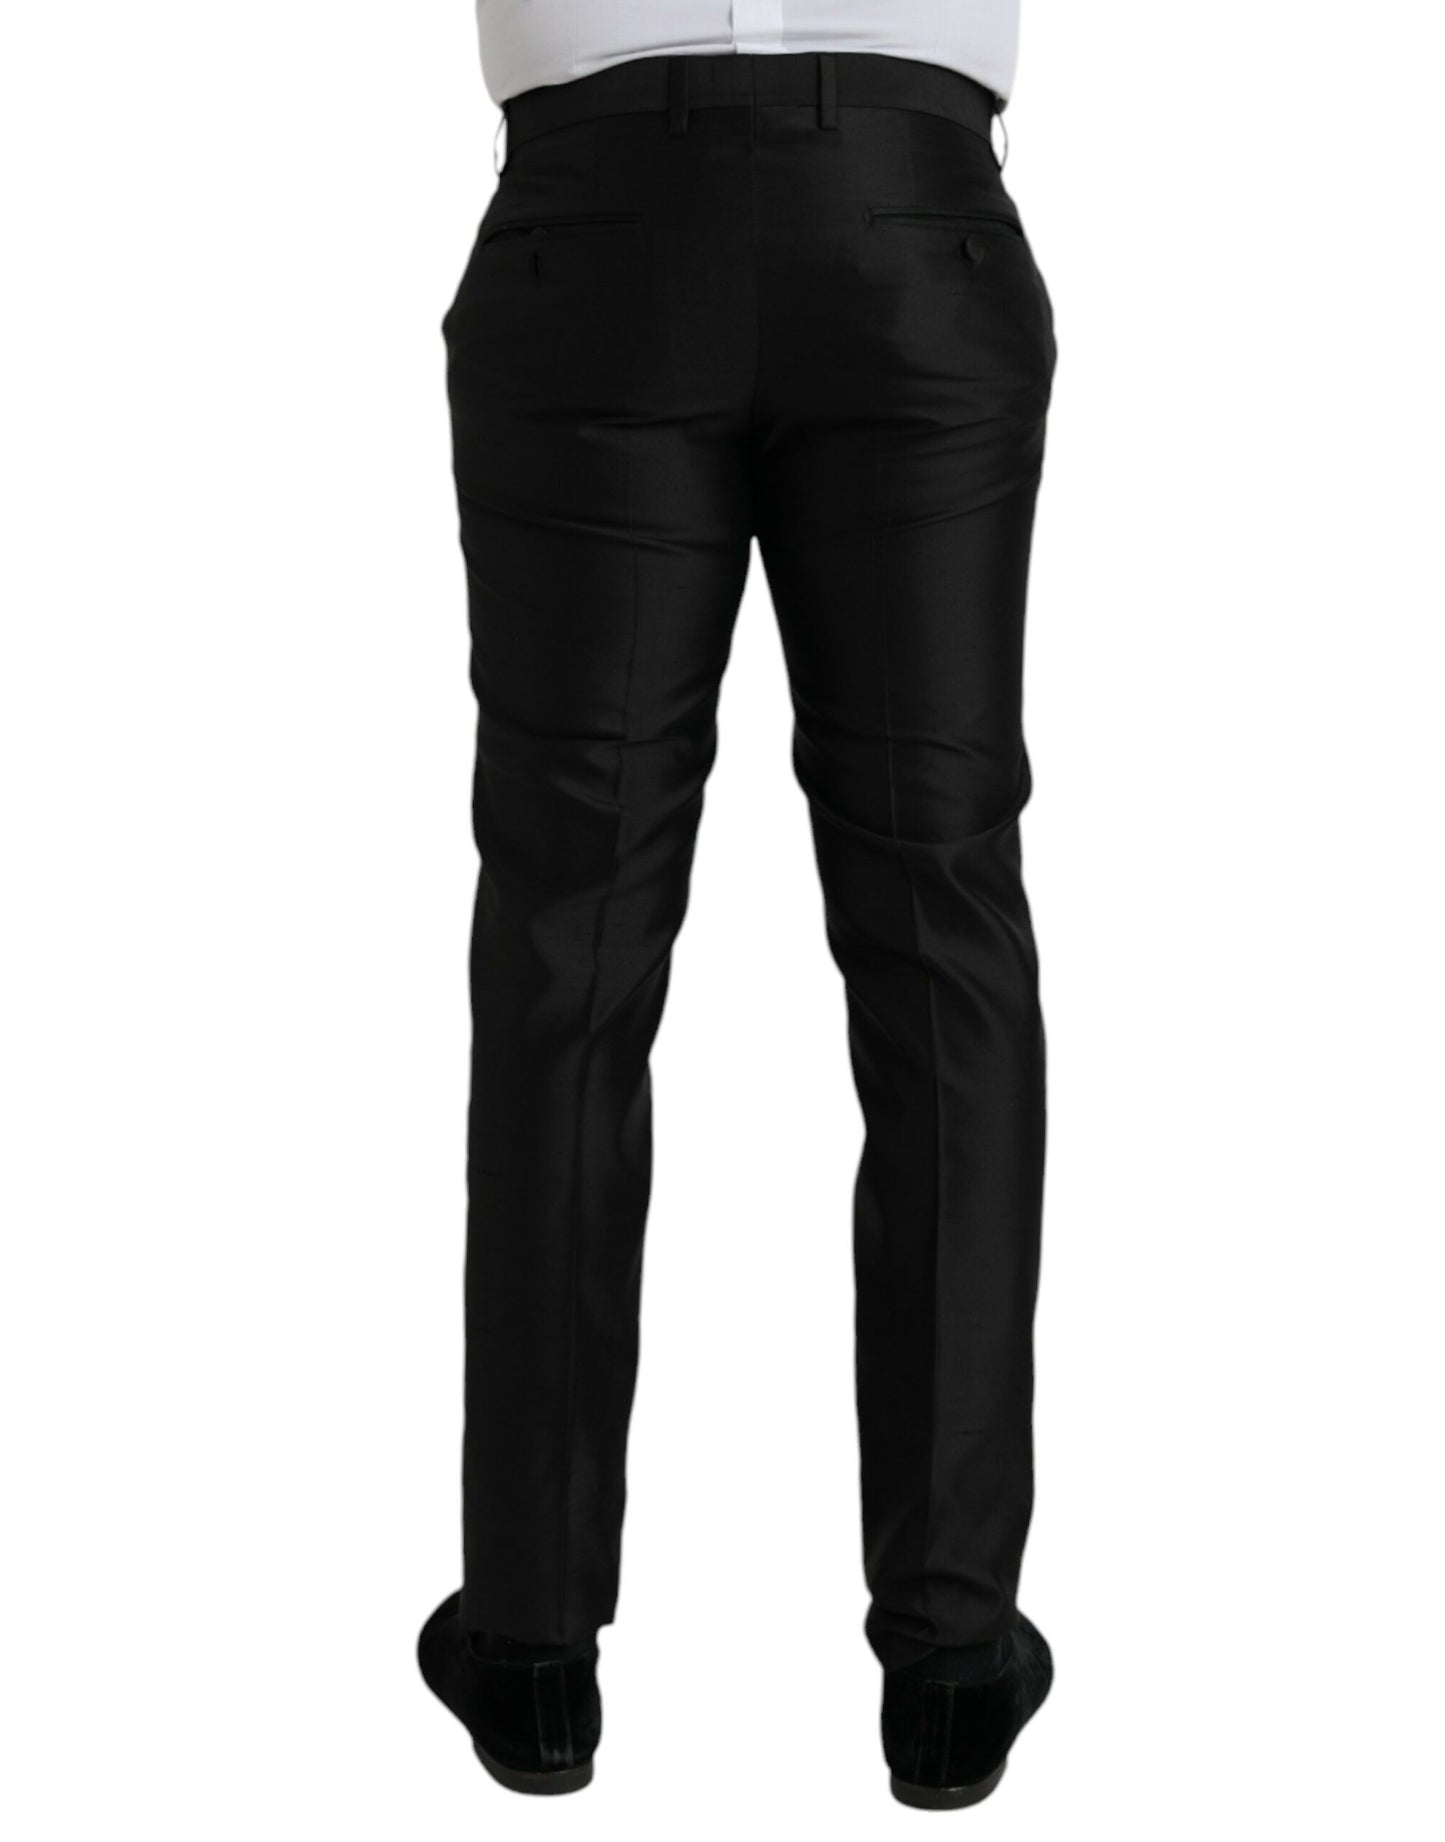 Fashionsarah.com Fashionsarah.com Dolce & Gabbana Black Silk SlimFit Dress Formal Pants